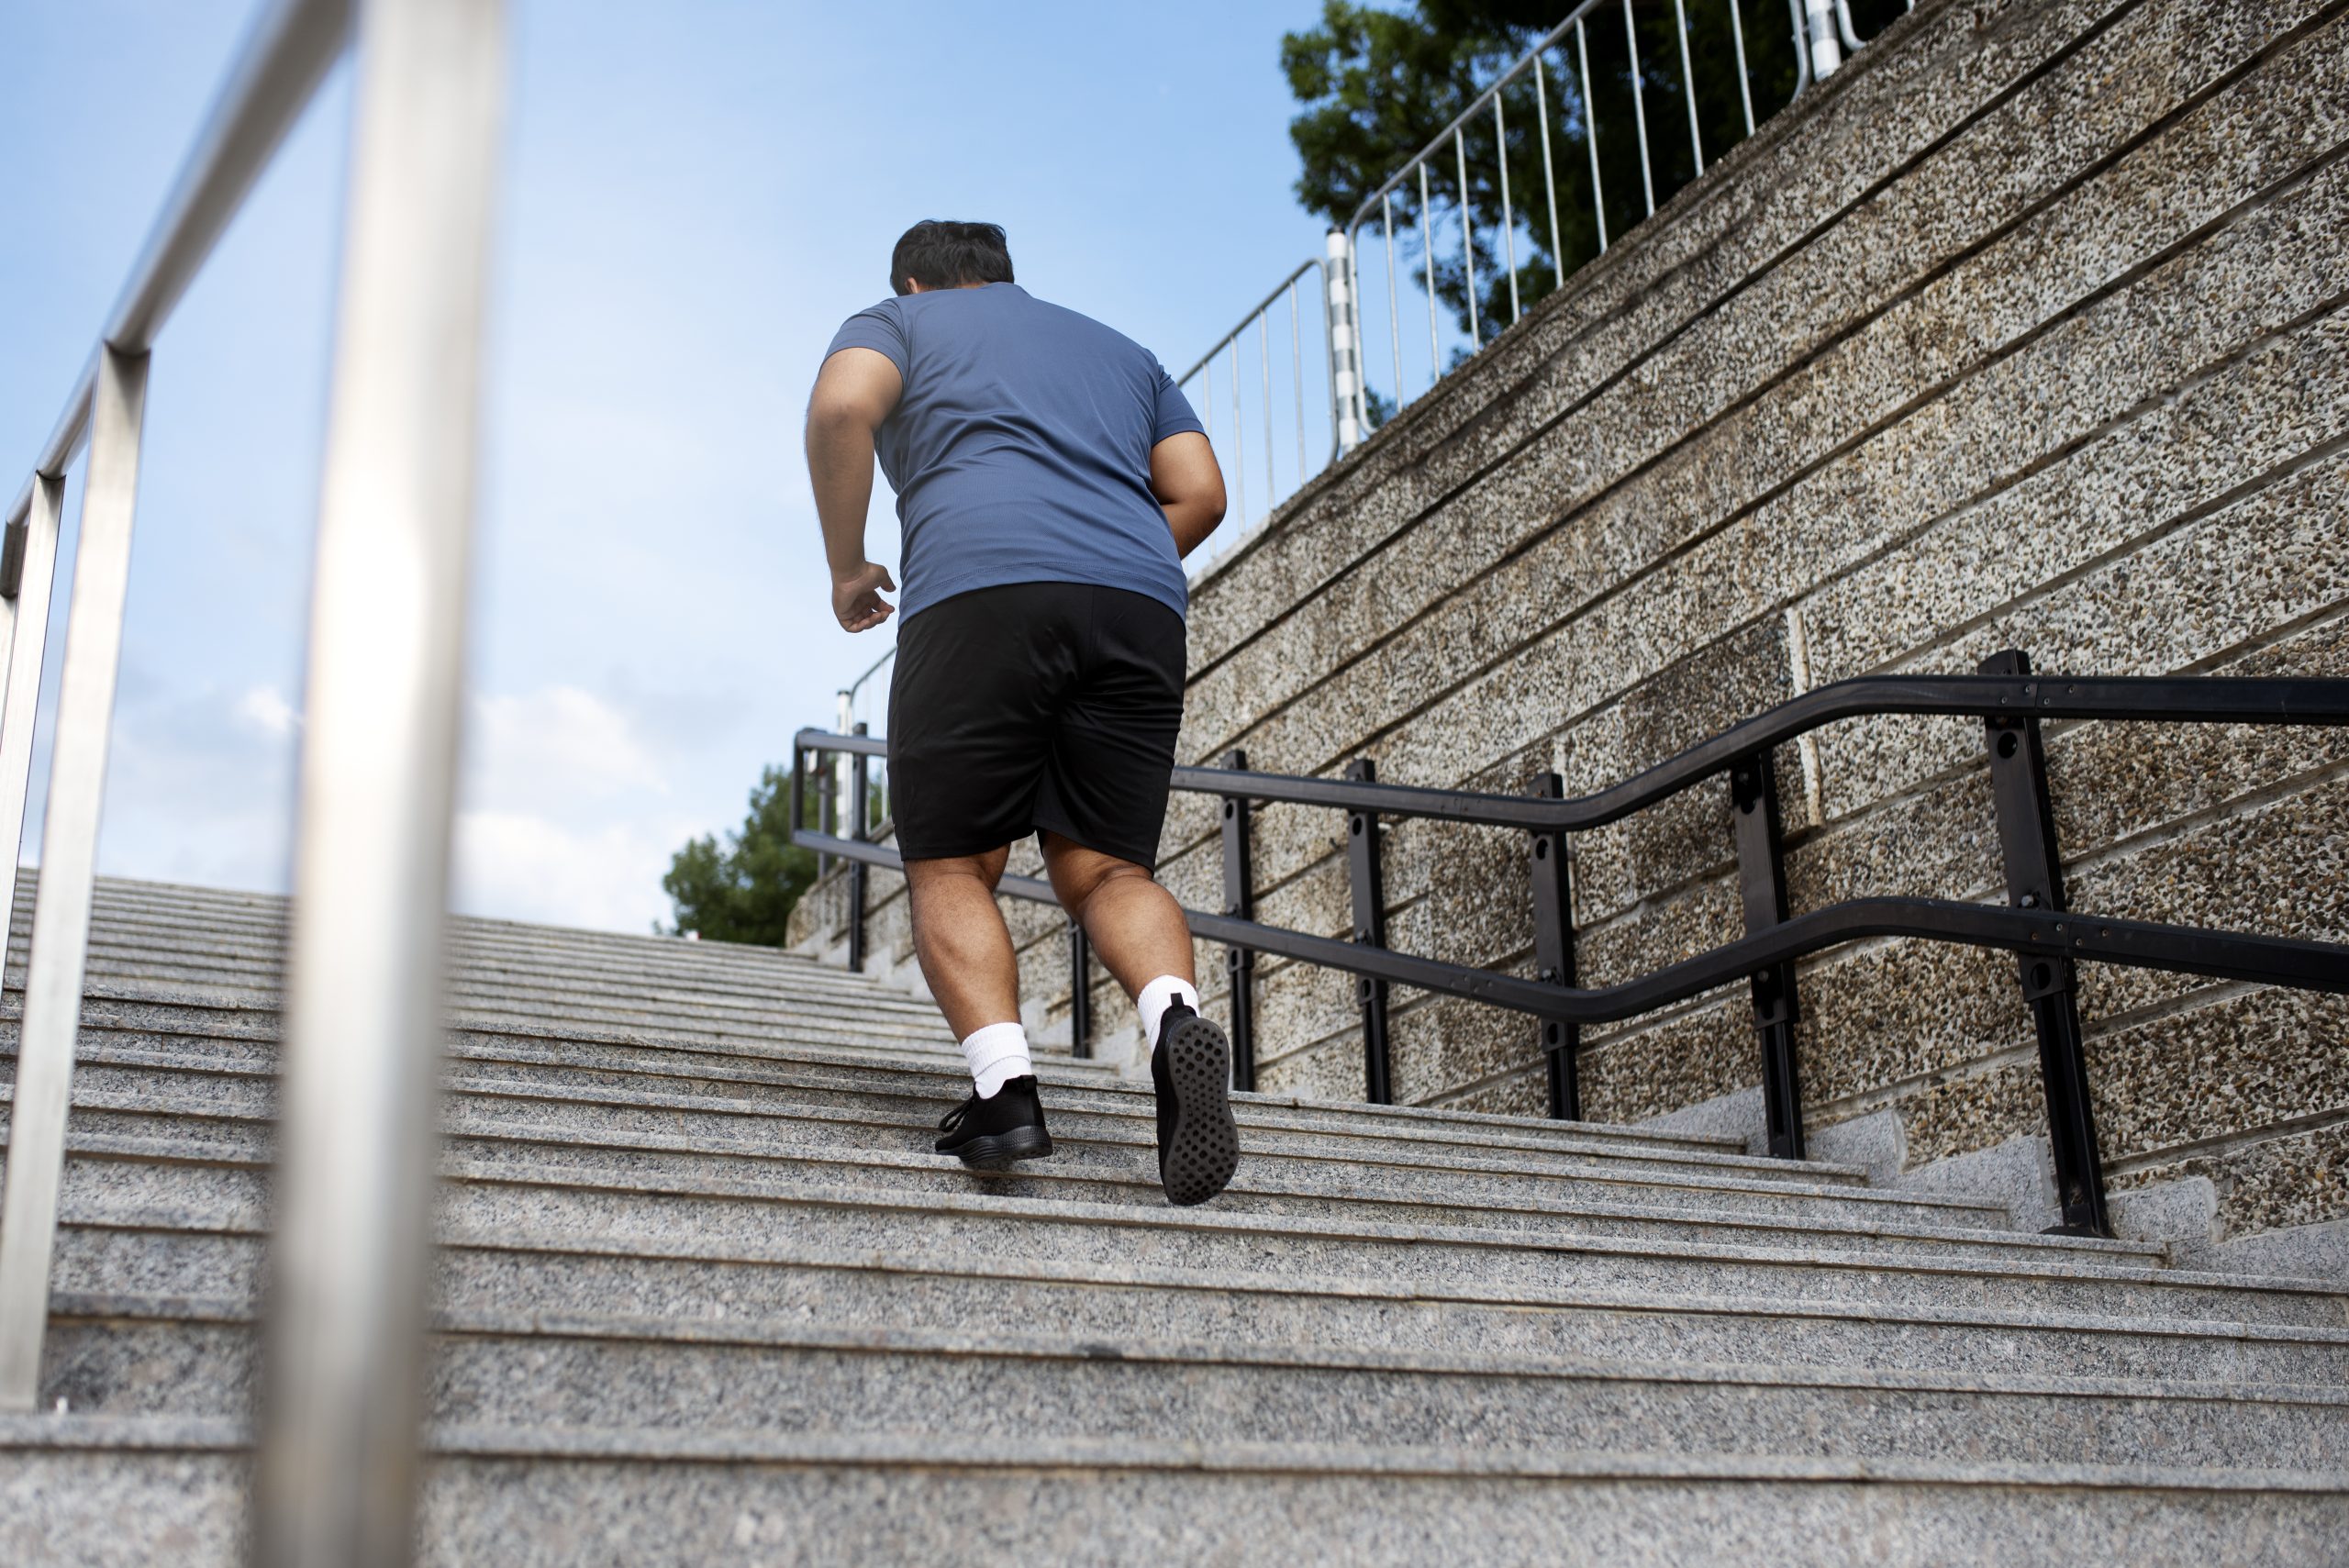 Subir cinco lances de escada por dia reduz risco de doenças cardíacas em 20%